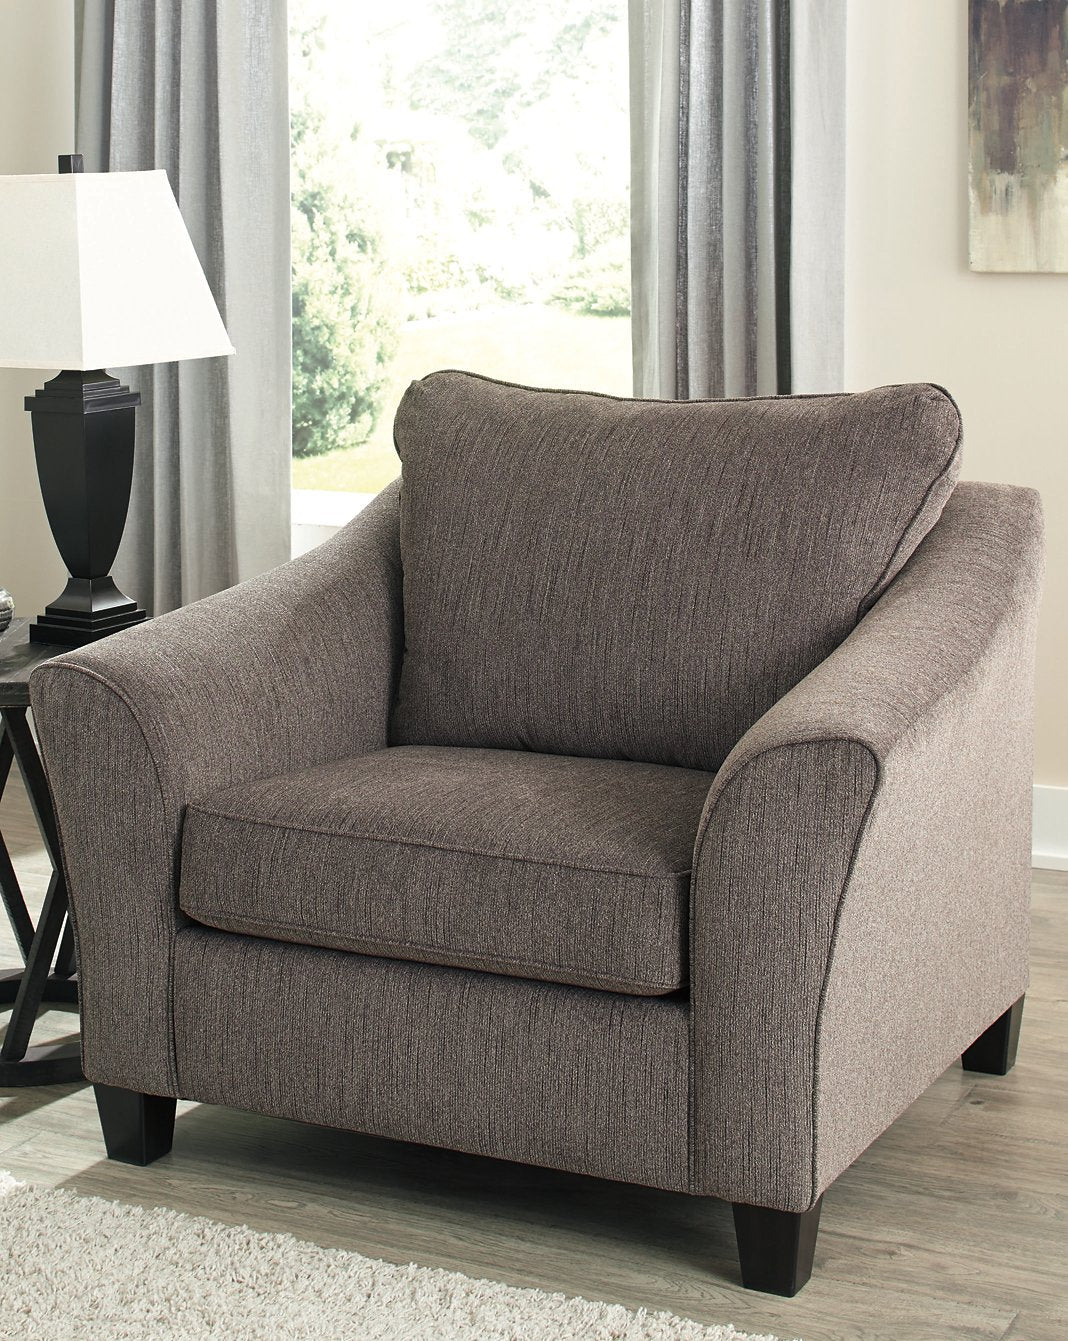 Nemoli Living Room Set - Half Price Furniture